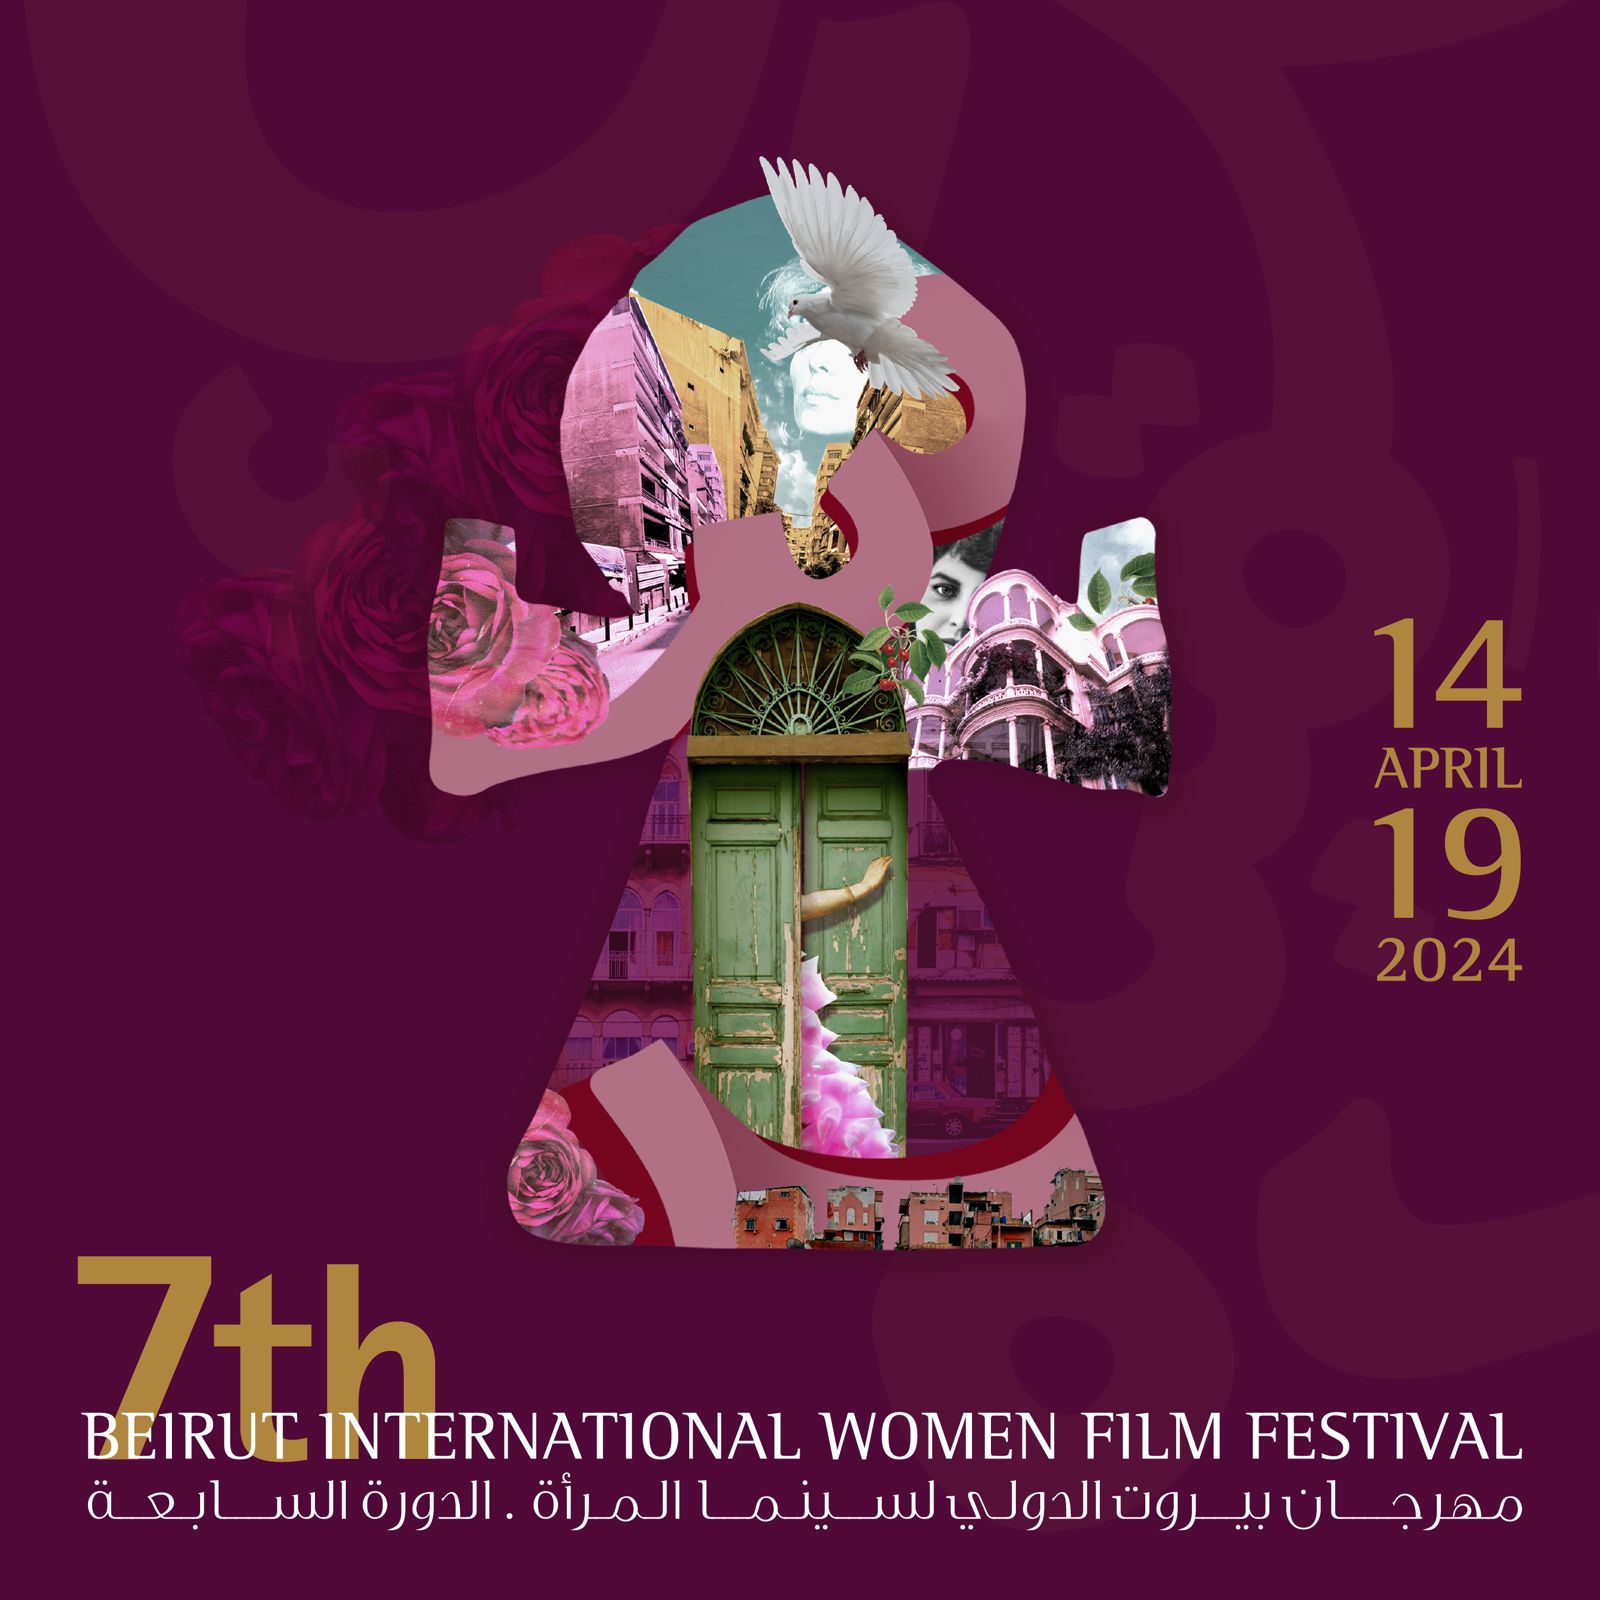 تكريم الممثلة المصرية يسرا في مهرجان بيروت الدولي لسينما المرأة في نيسان المقبل